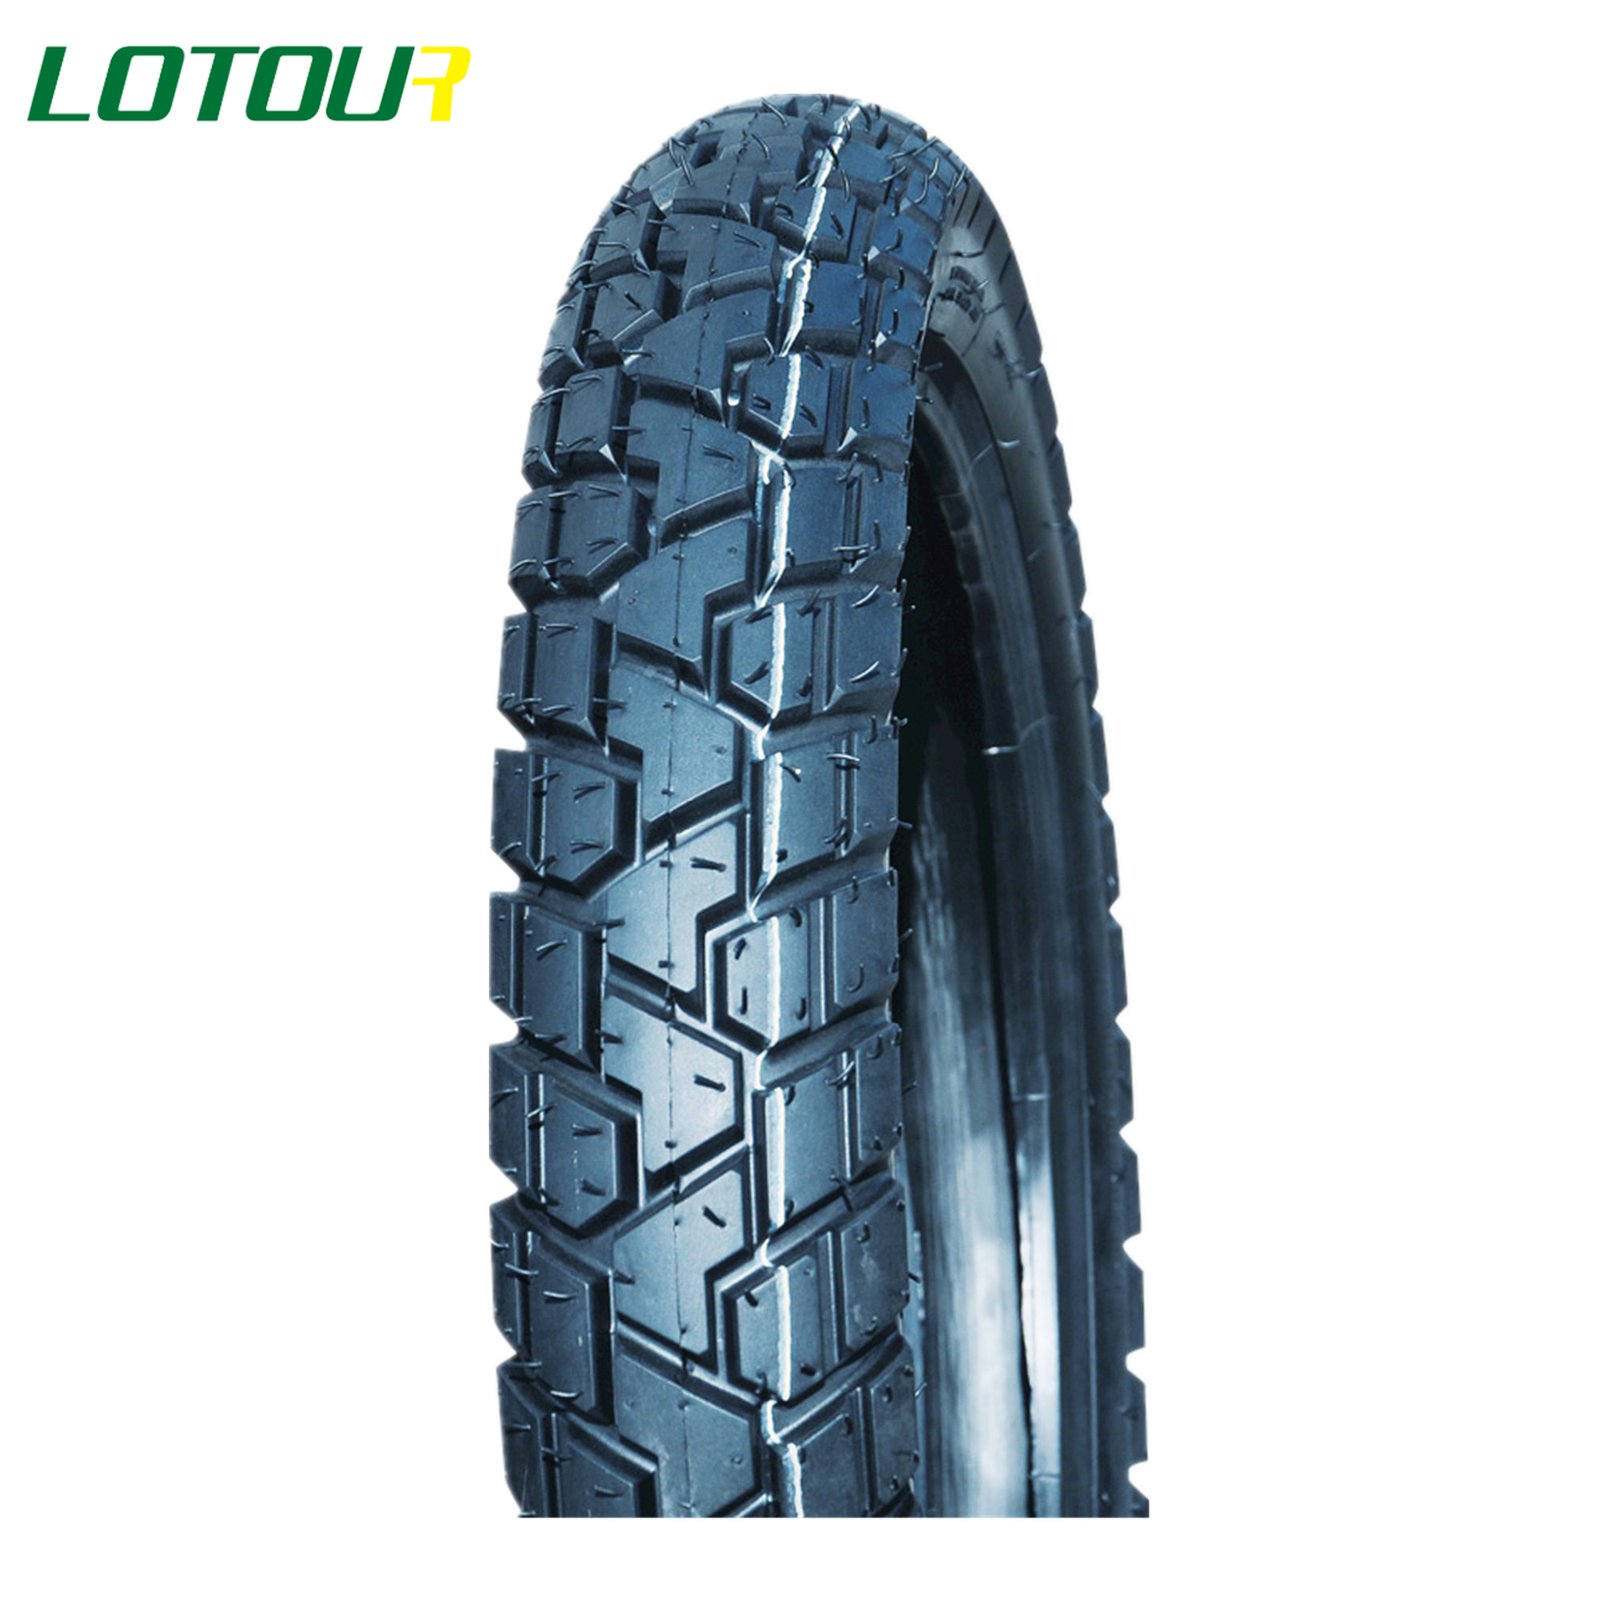 Lotour Tire M2095